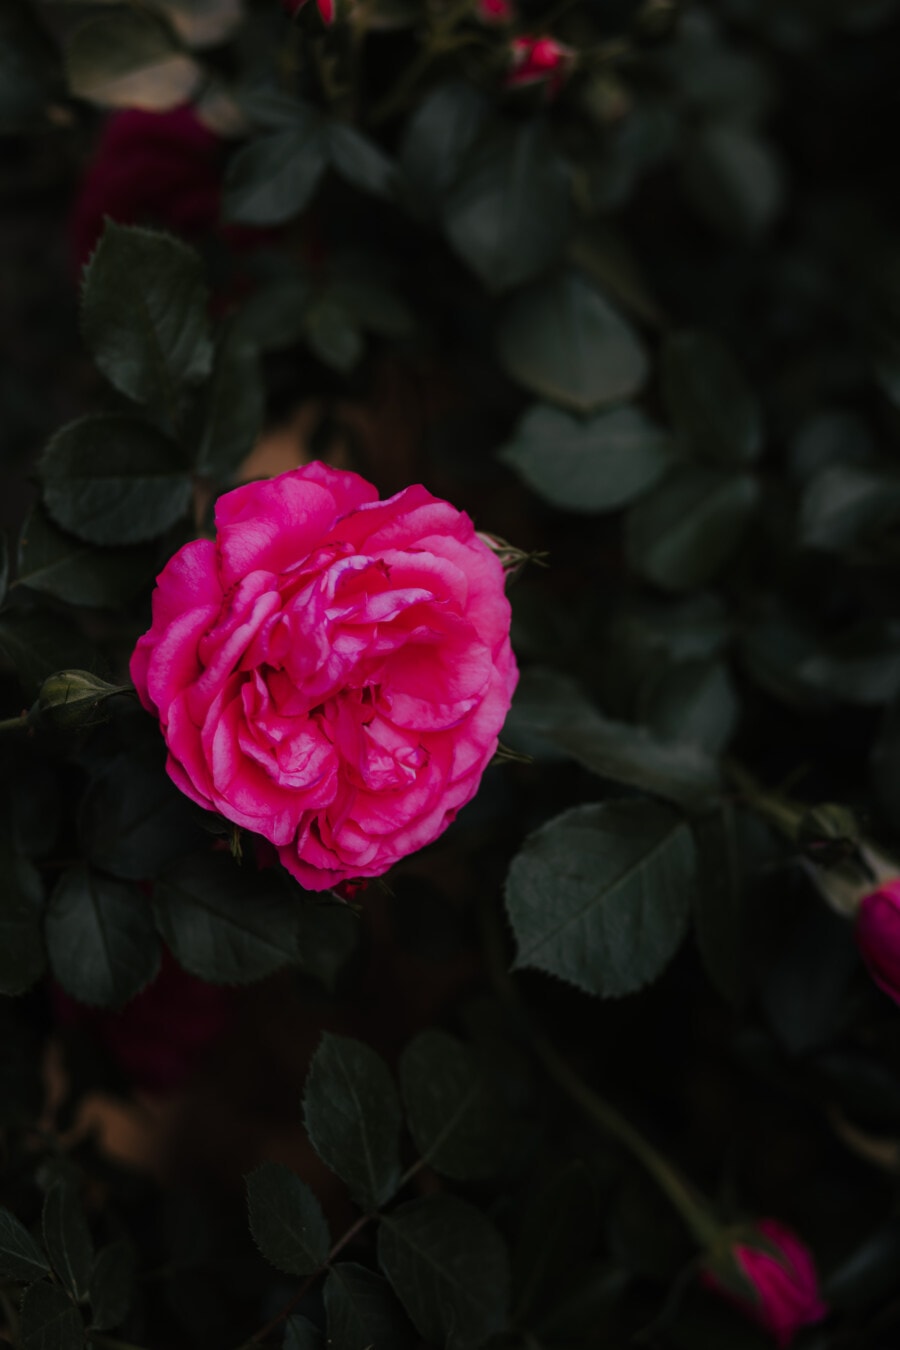 τριαντάφυλλο, σκούρο κόκκινο, ροζ, σκιά, θάμνος, ροζ, φυτό, φύλλο, λουλούδι, πέταλο